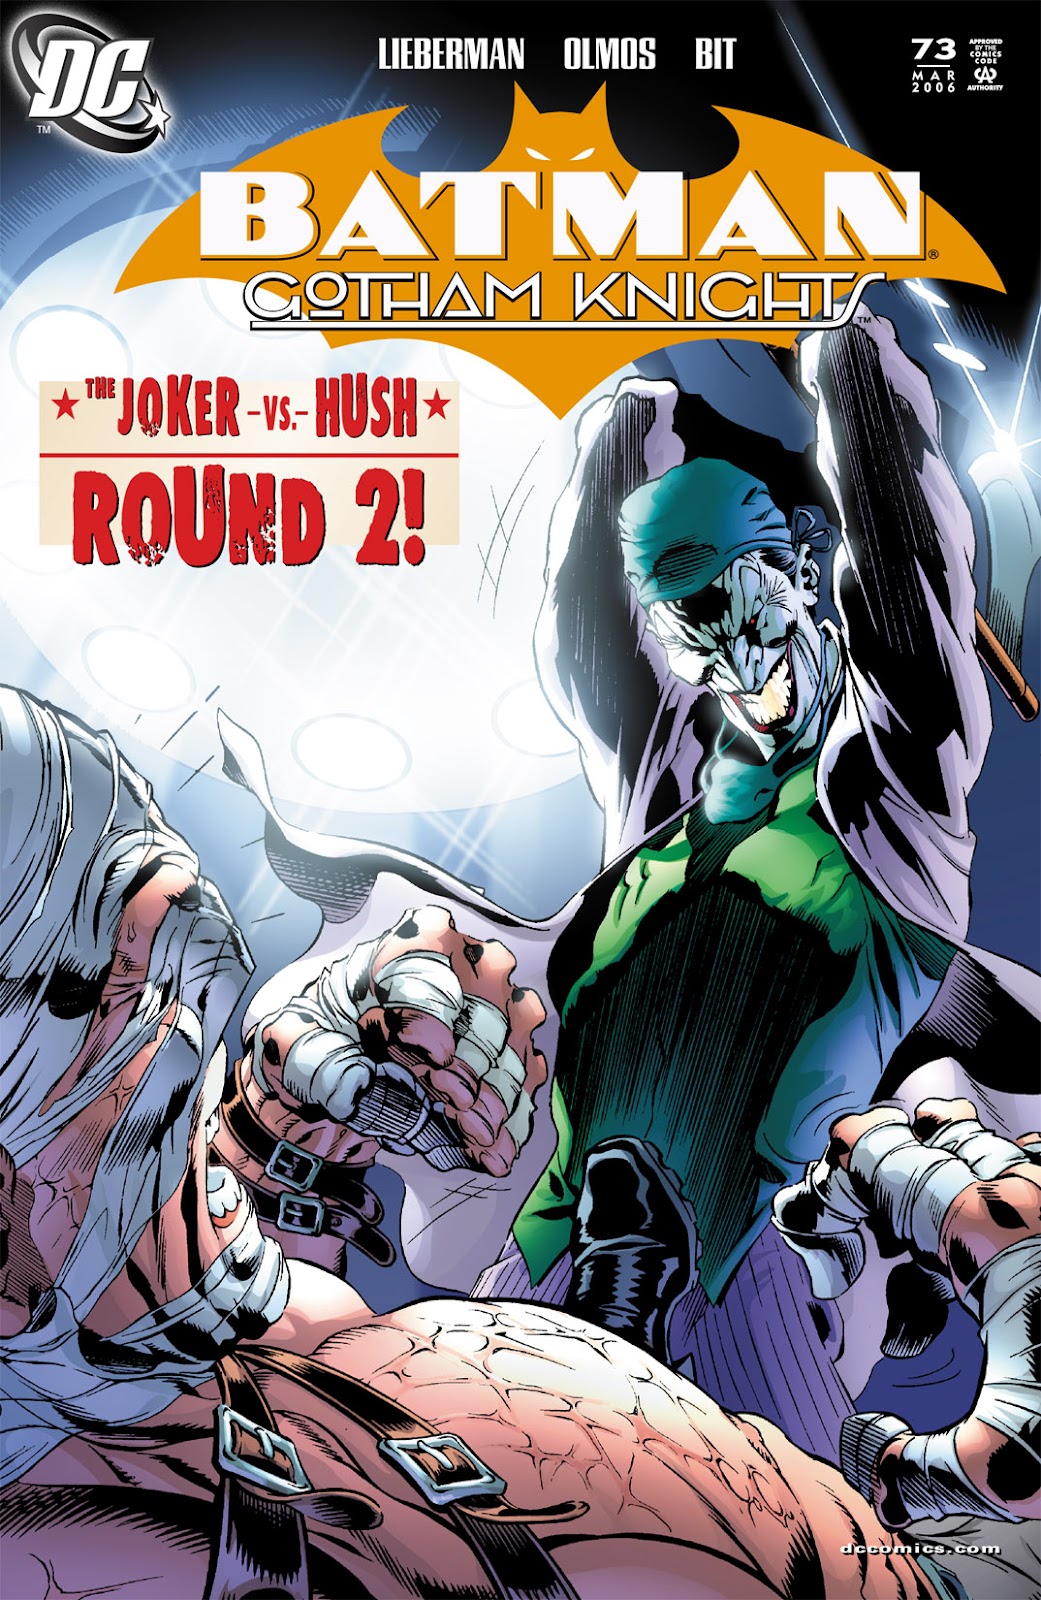 Batman: Gotham Knights issue 73 - Page 1